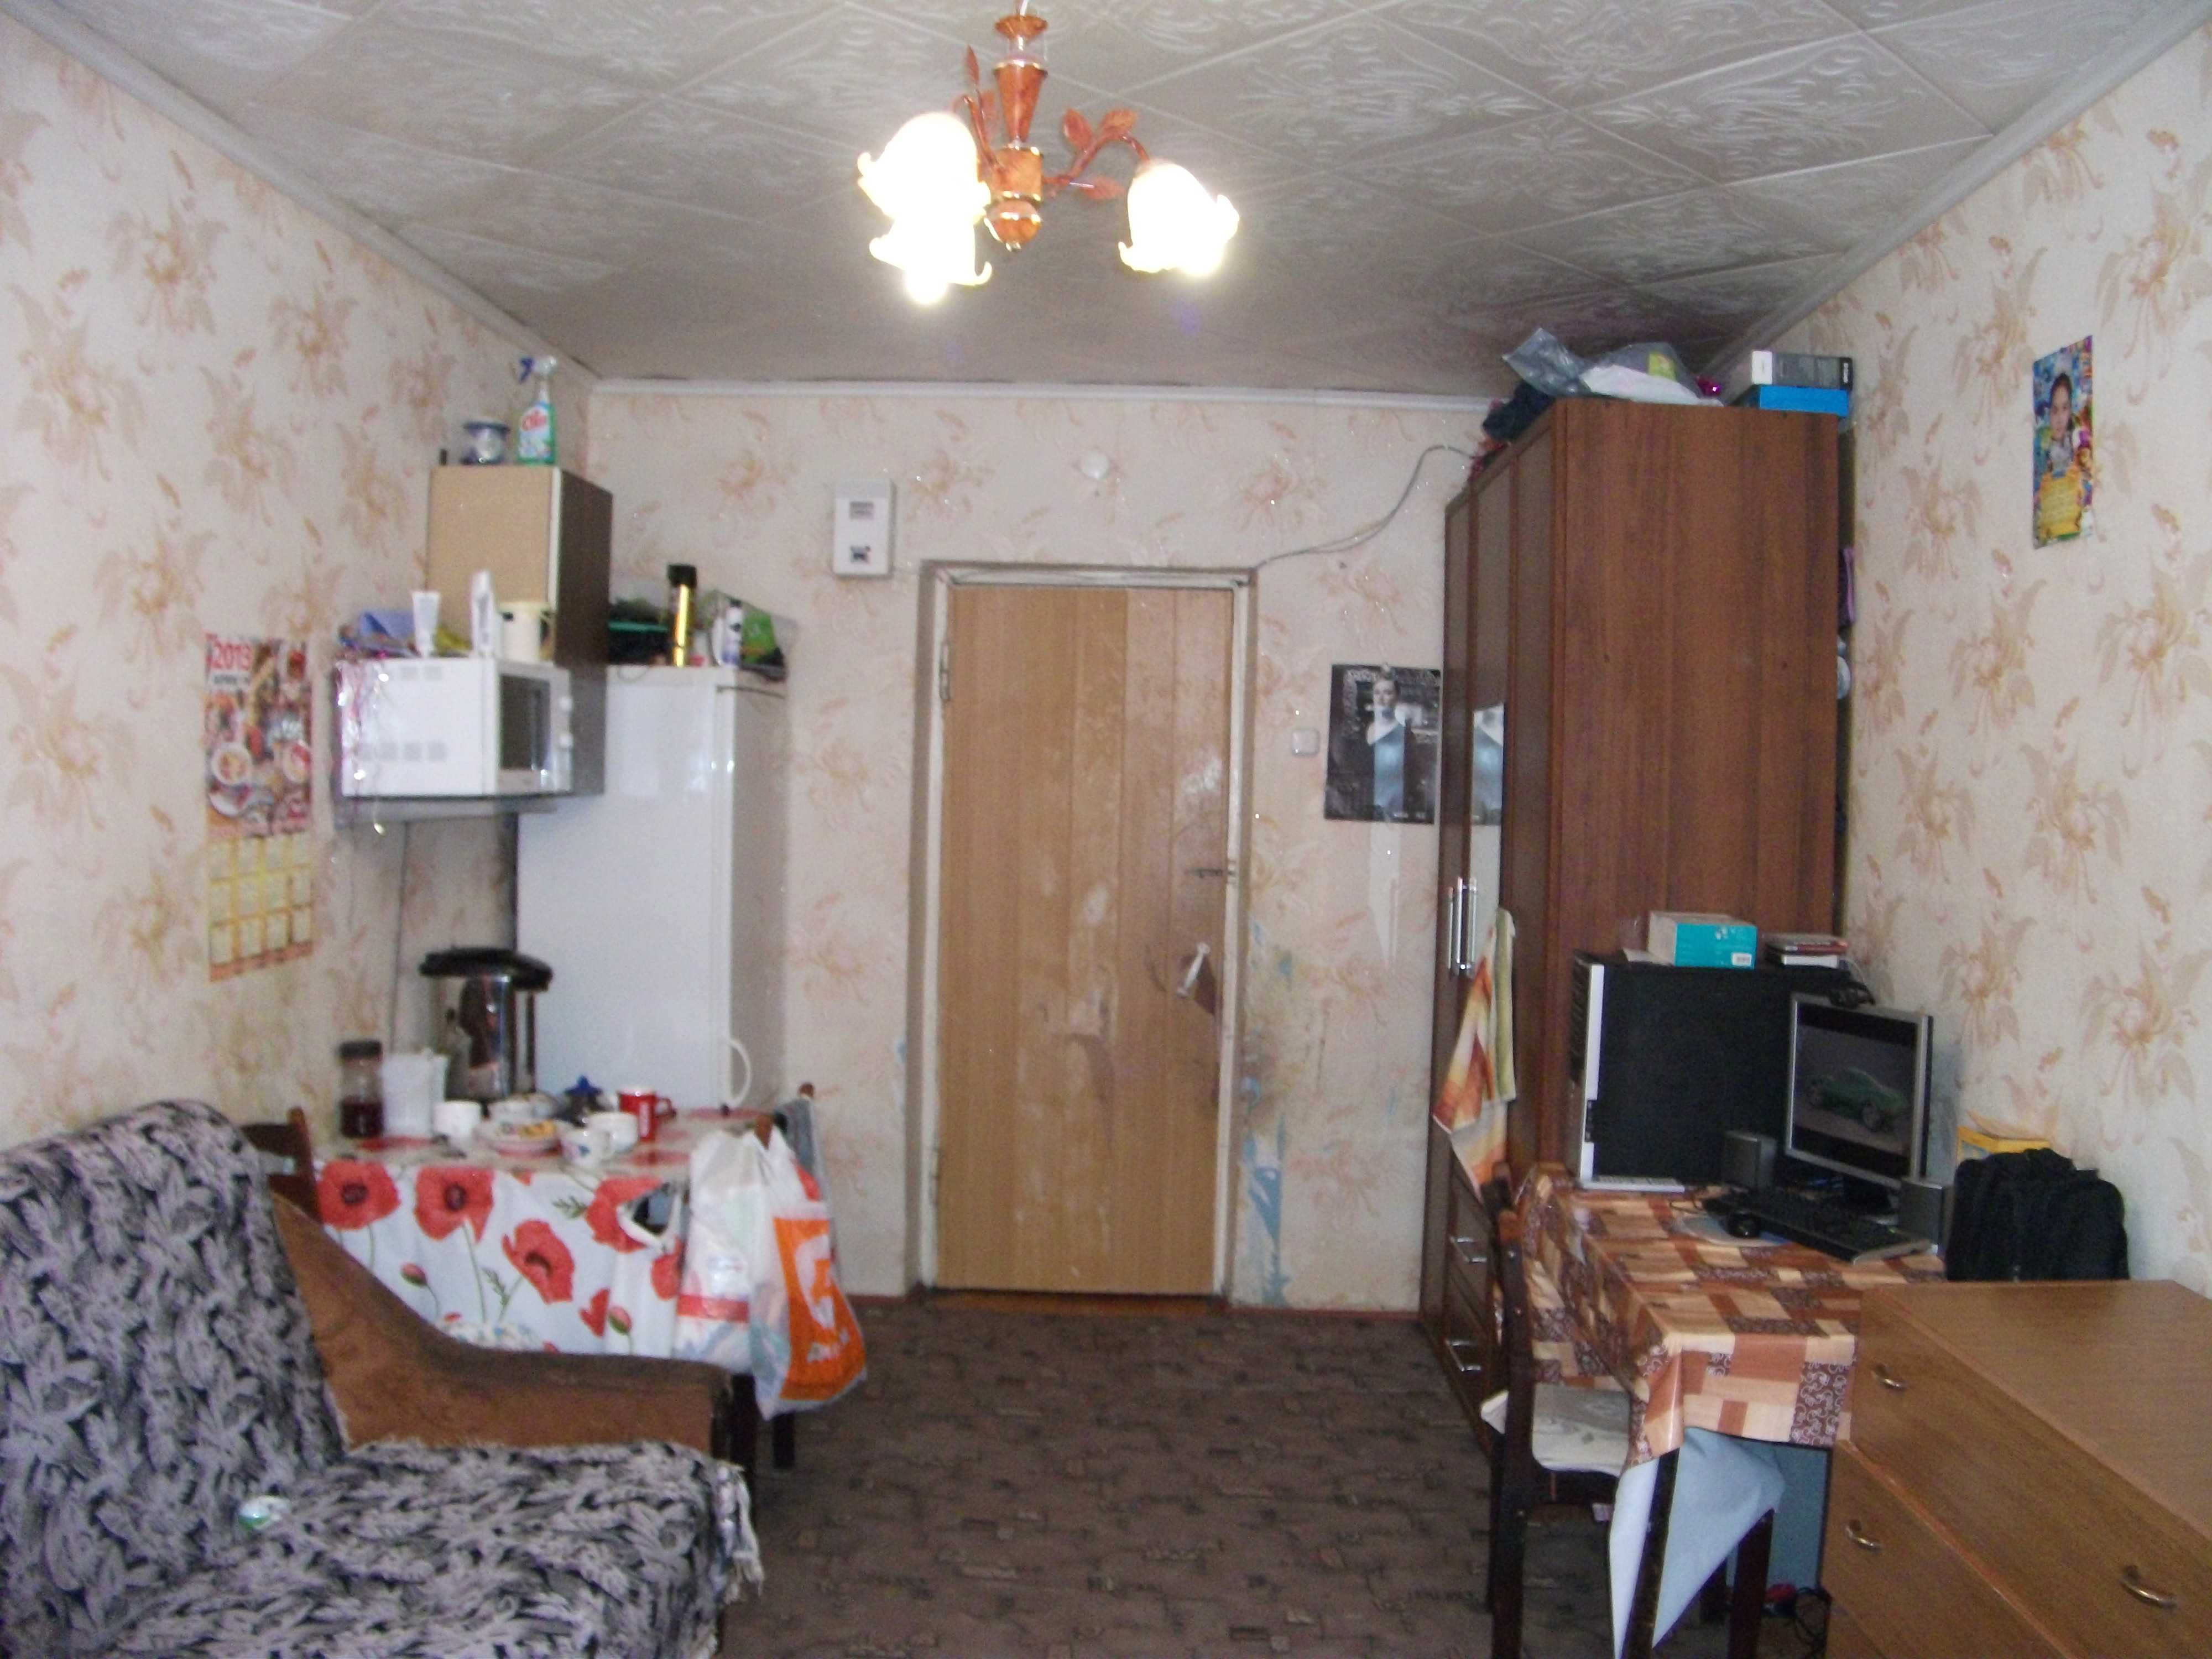 Комнаты в общежитии ульяновск. Старая комната в общаге. Комната в общежитии без ремонта. Комната в общежитии Старом. Комната в общежитии в плохом состоянии.